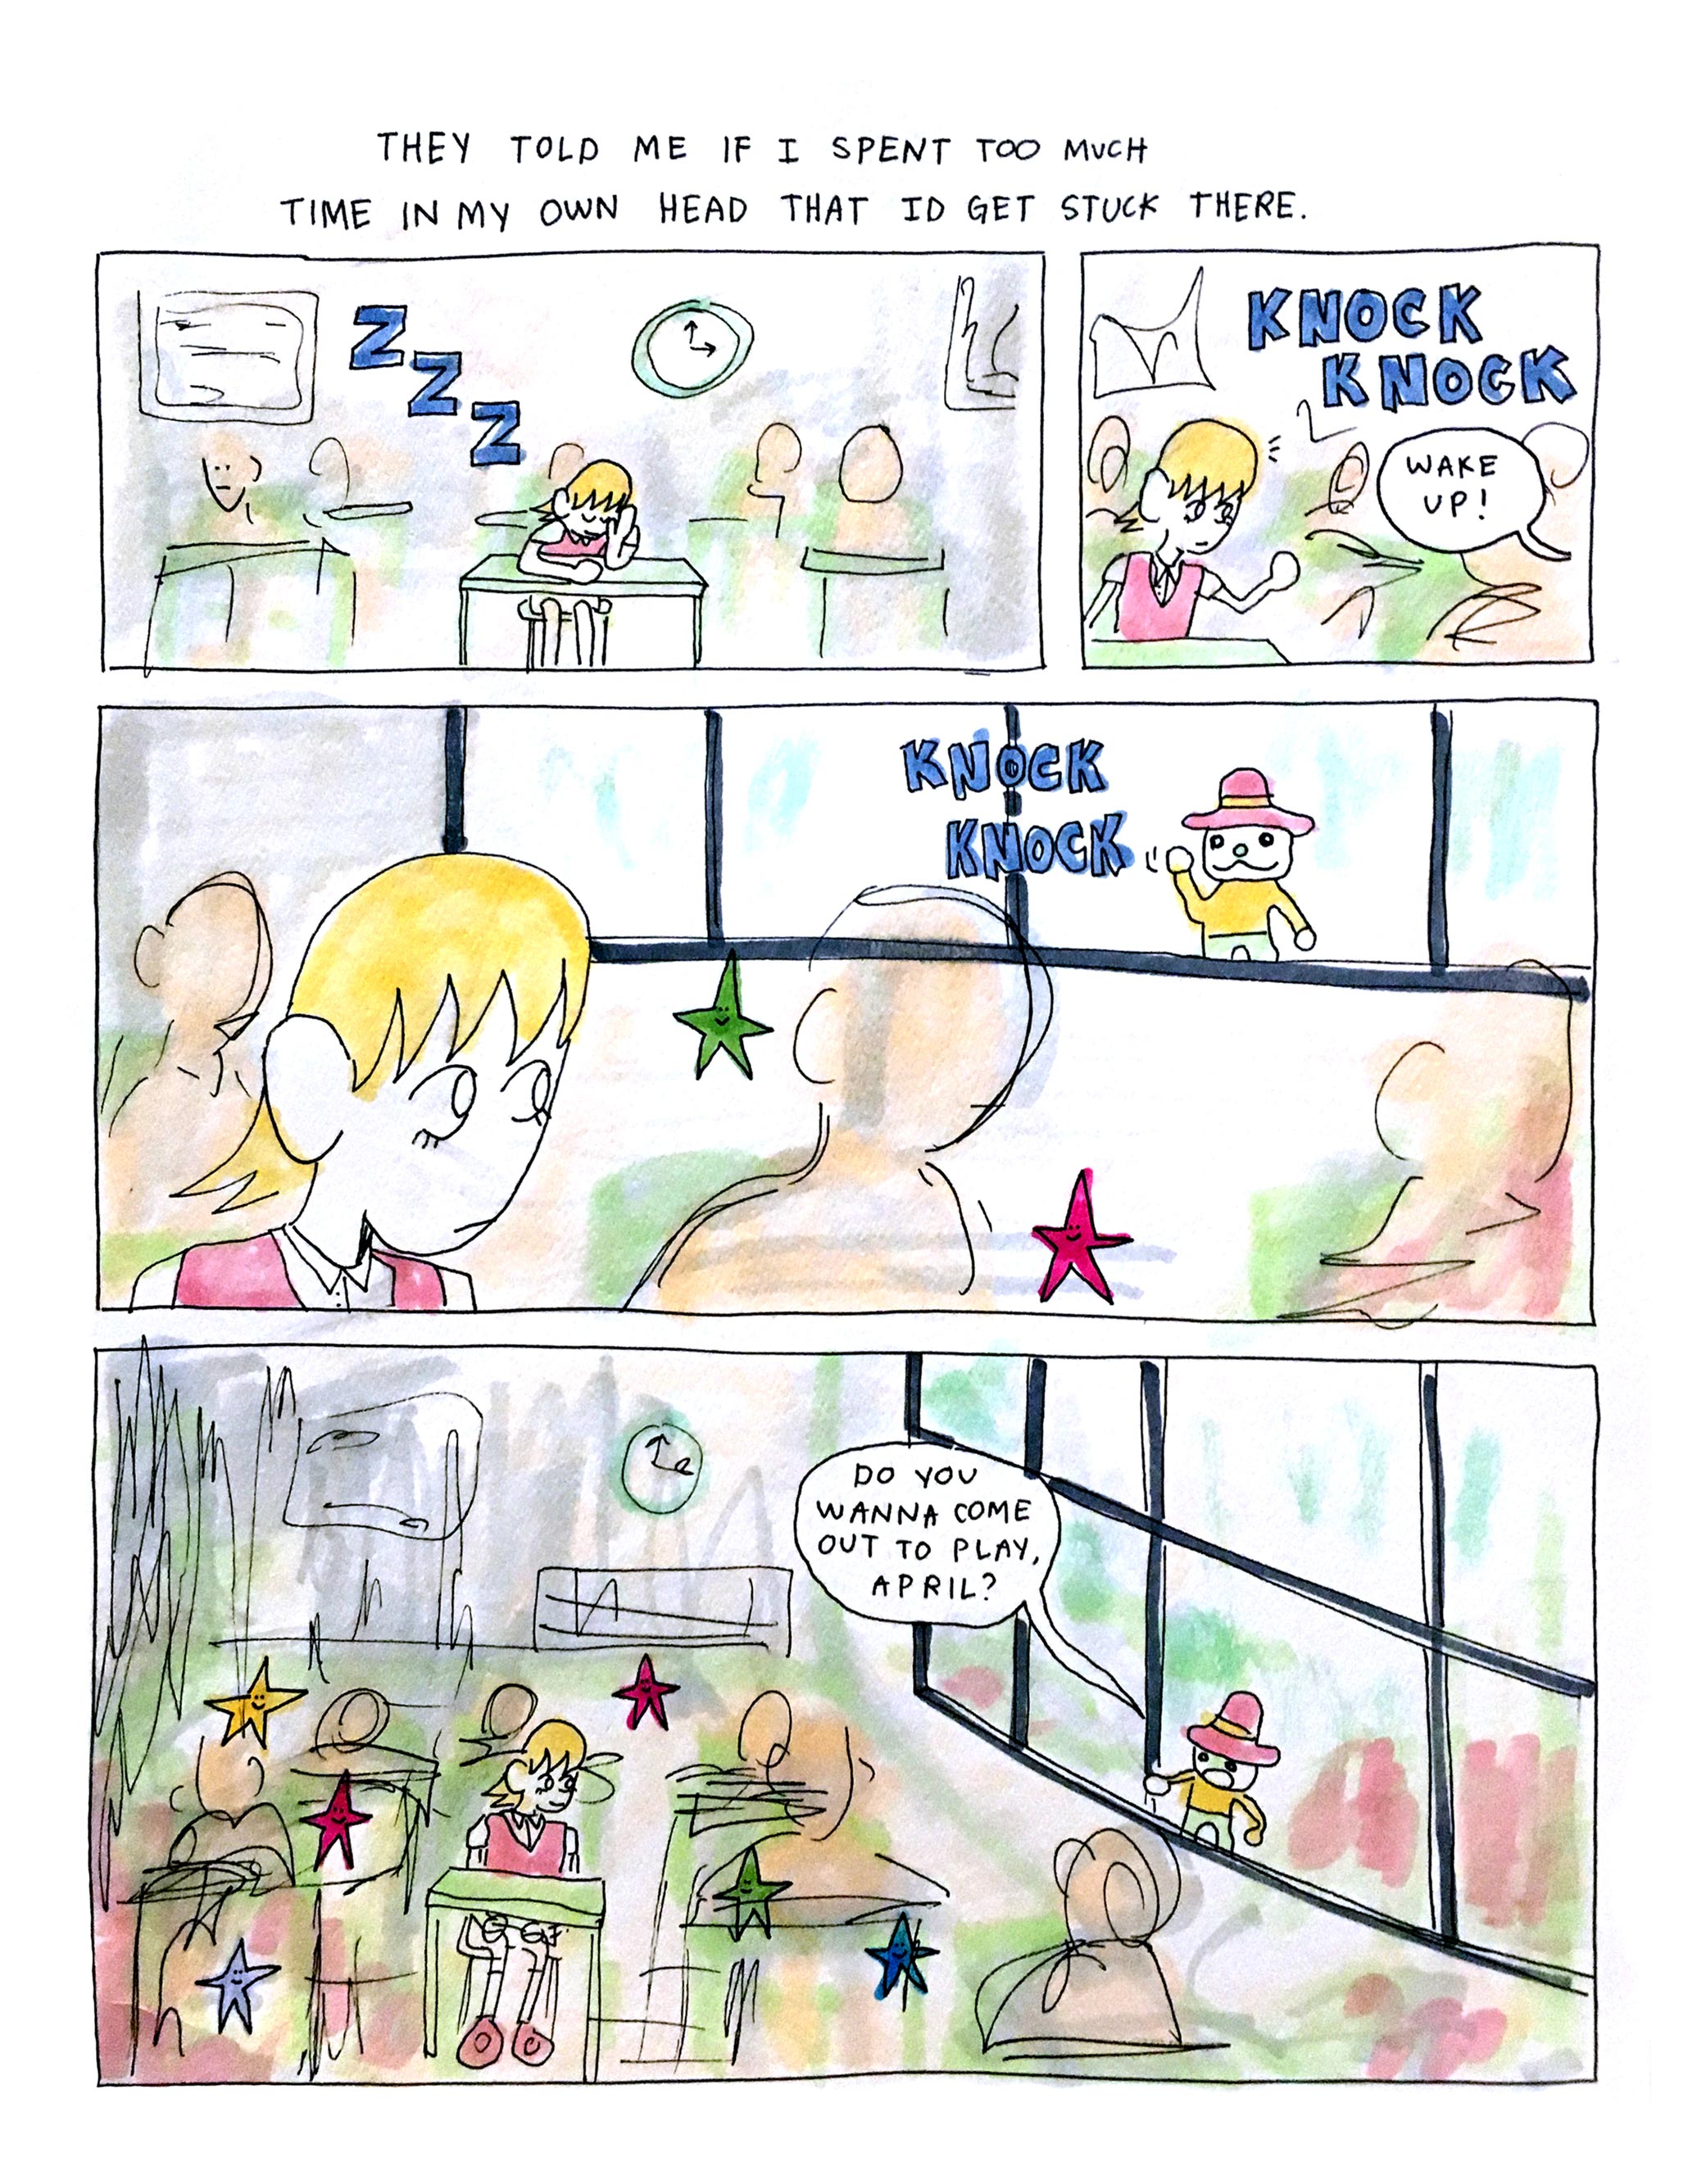 "Classroom Daydream" comic by Logan Beecher.